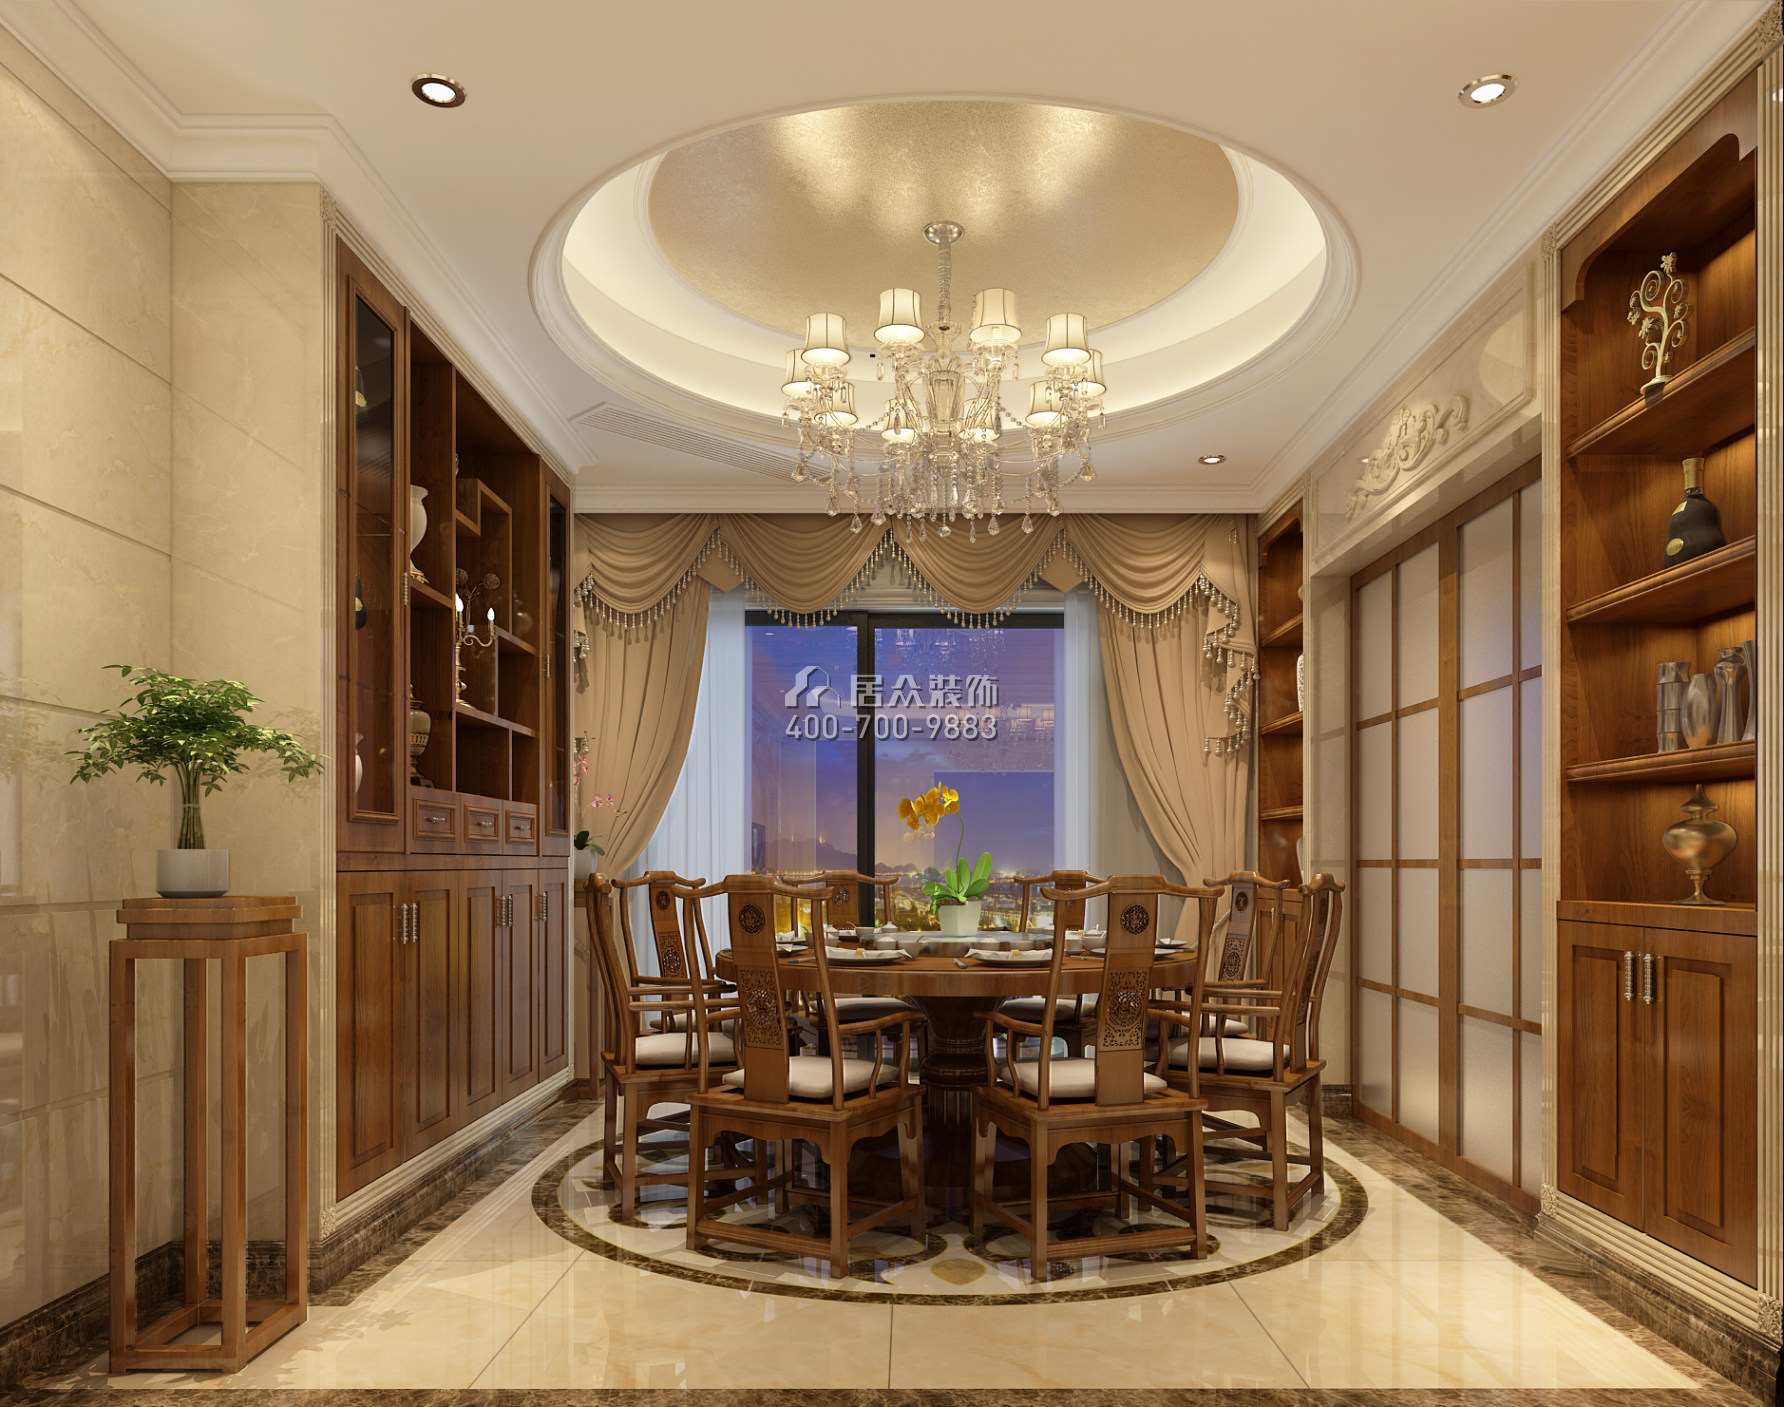 懿峰雅居244平方米歐式風格平層戶型餐廳裝修效果圖